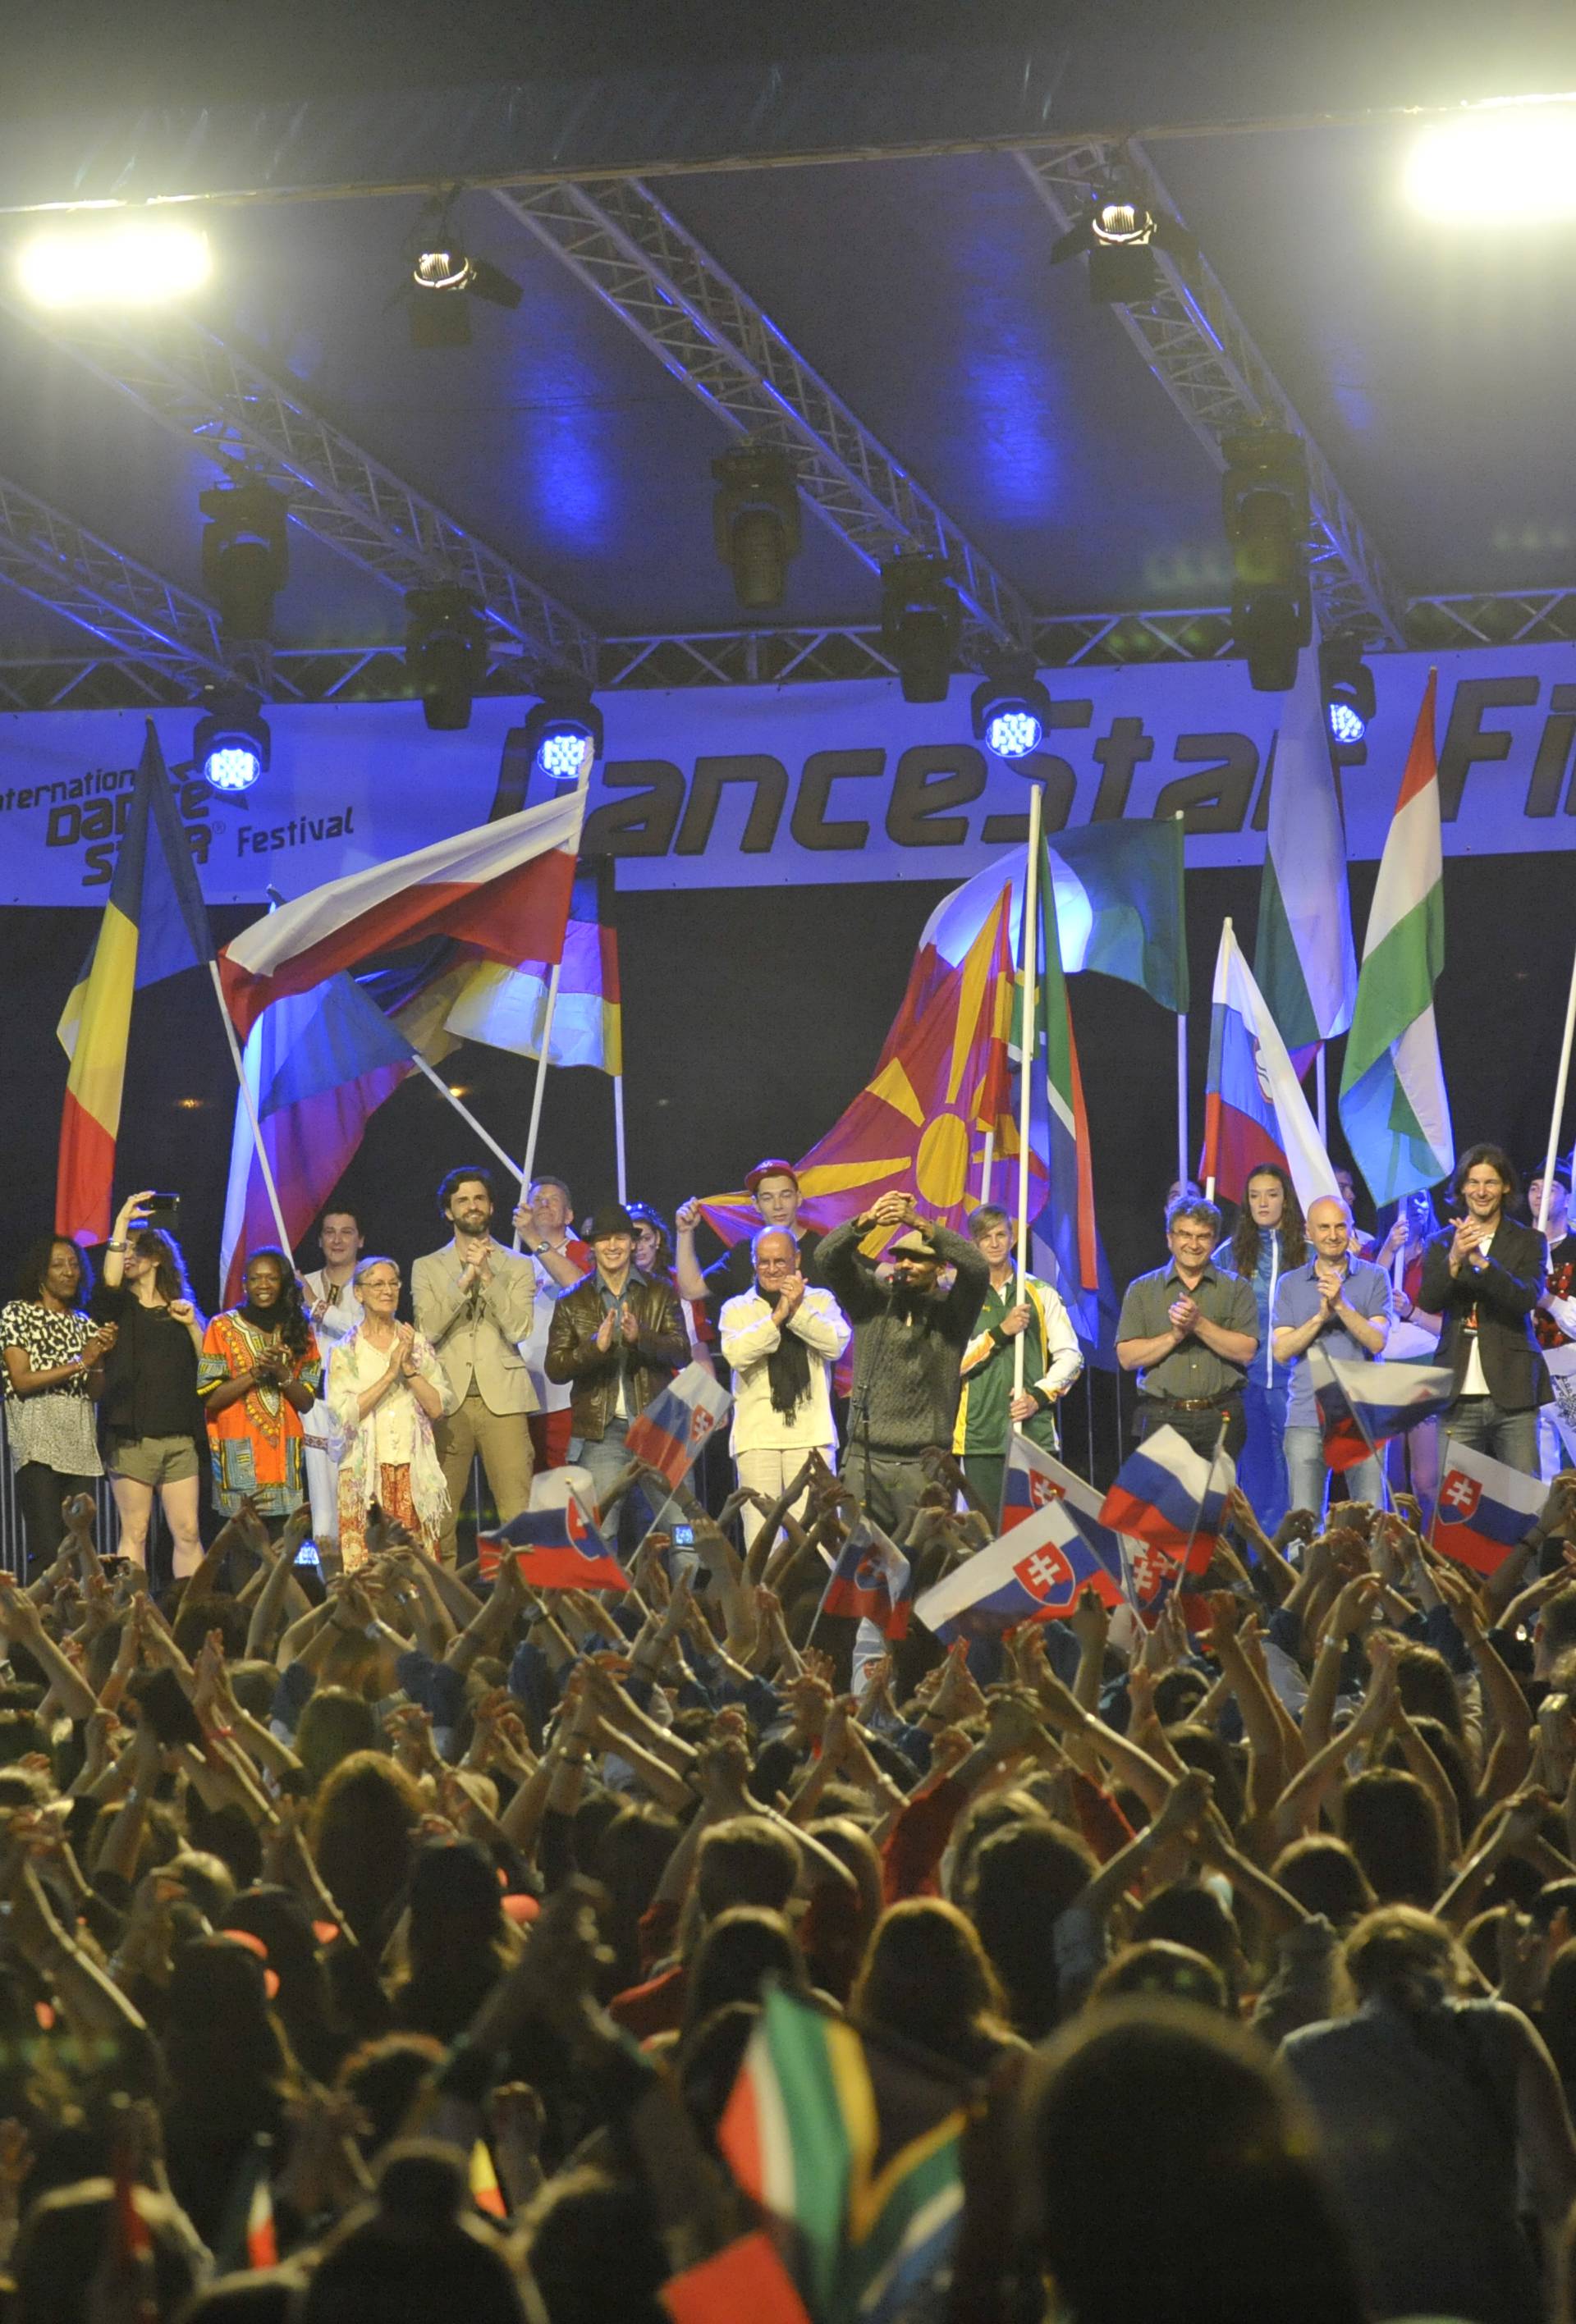 DanceStar u Zagrebu očekuje čak i više od 1500 natjecatelja